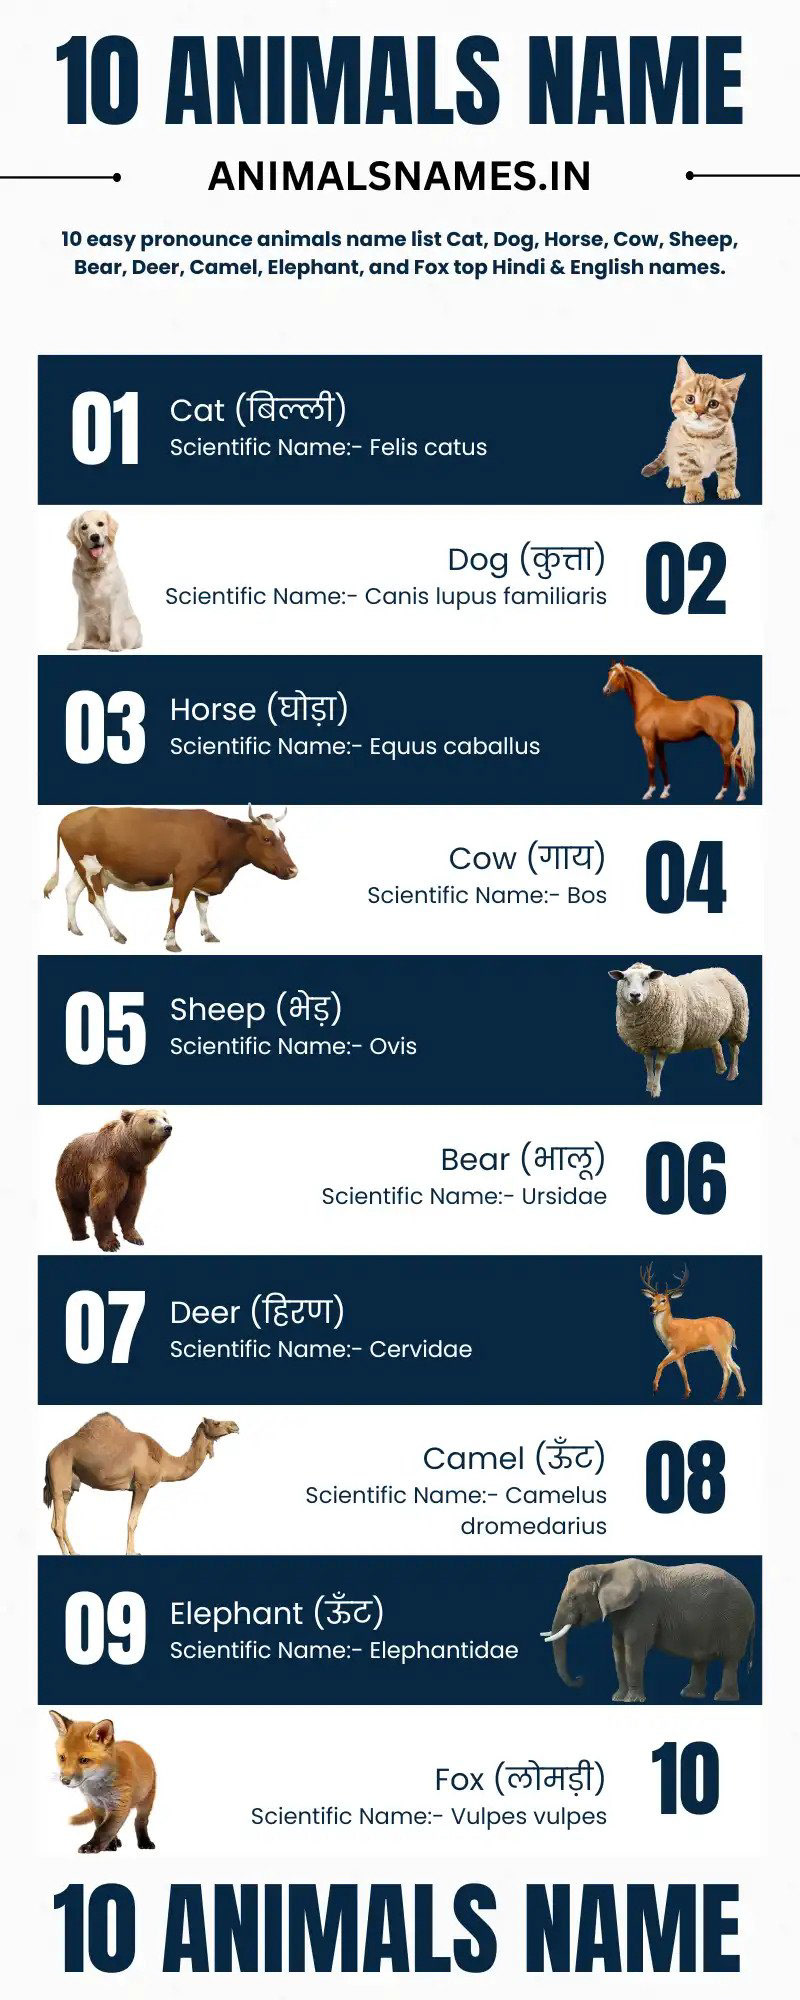 10 Animals Name animal name Animals Name Animals Name in English Animals Name in Hindi Animals Name PDF Animals Name Pictures Animals Names Domestic Animals Name Wild Animals Name